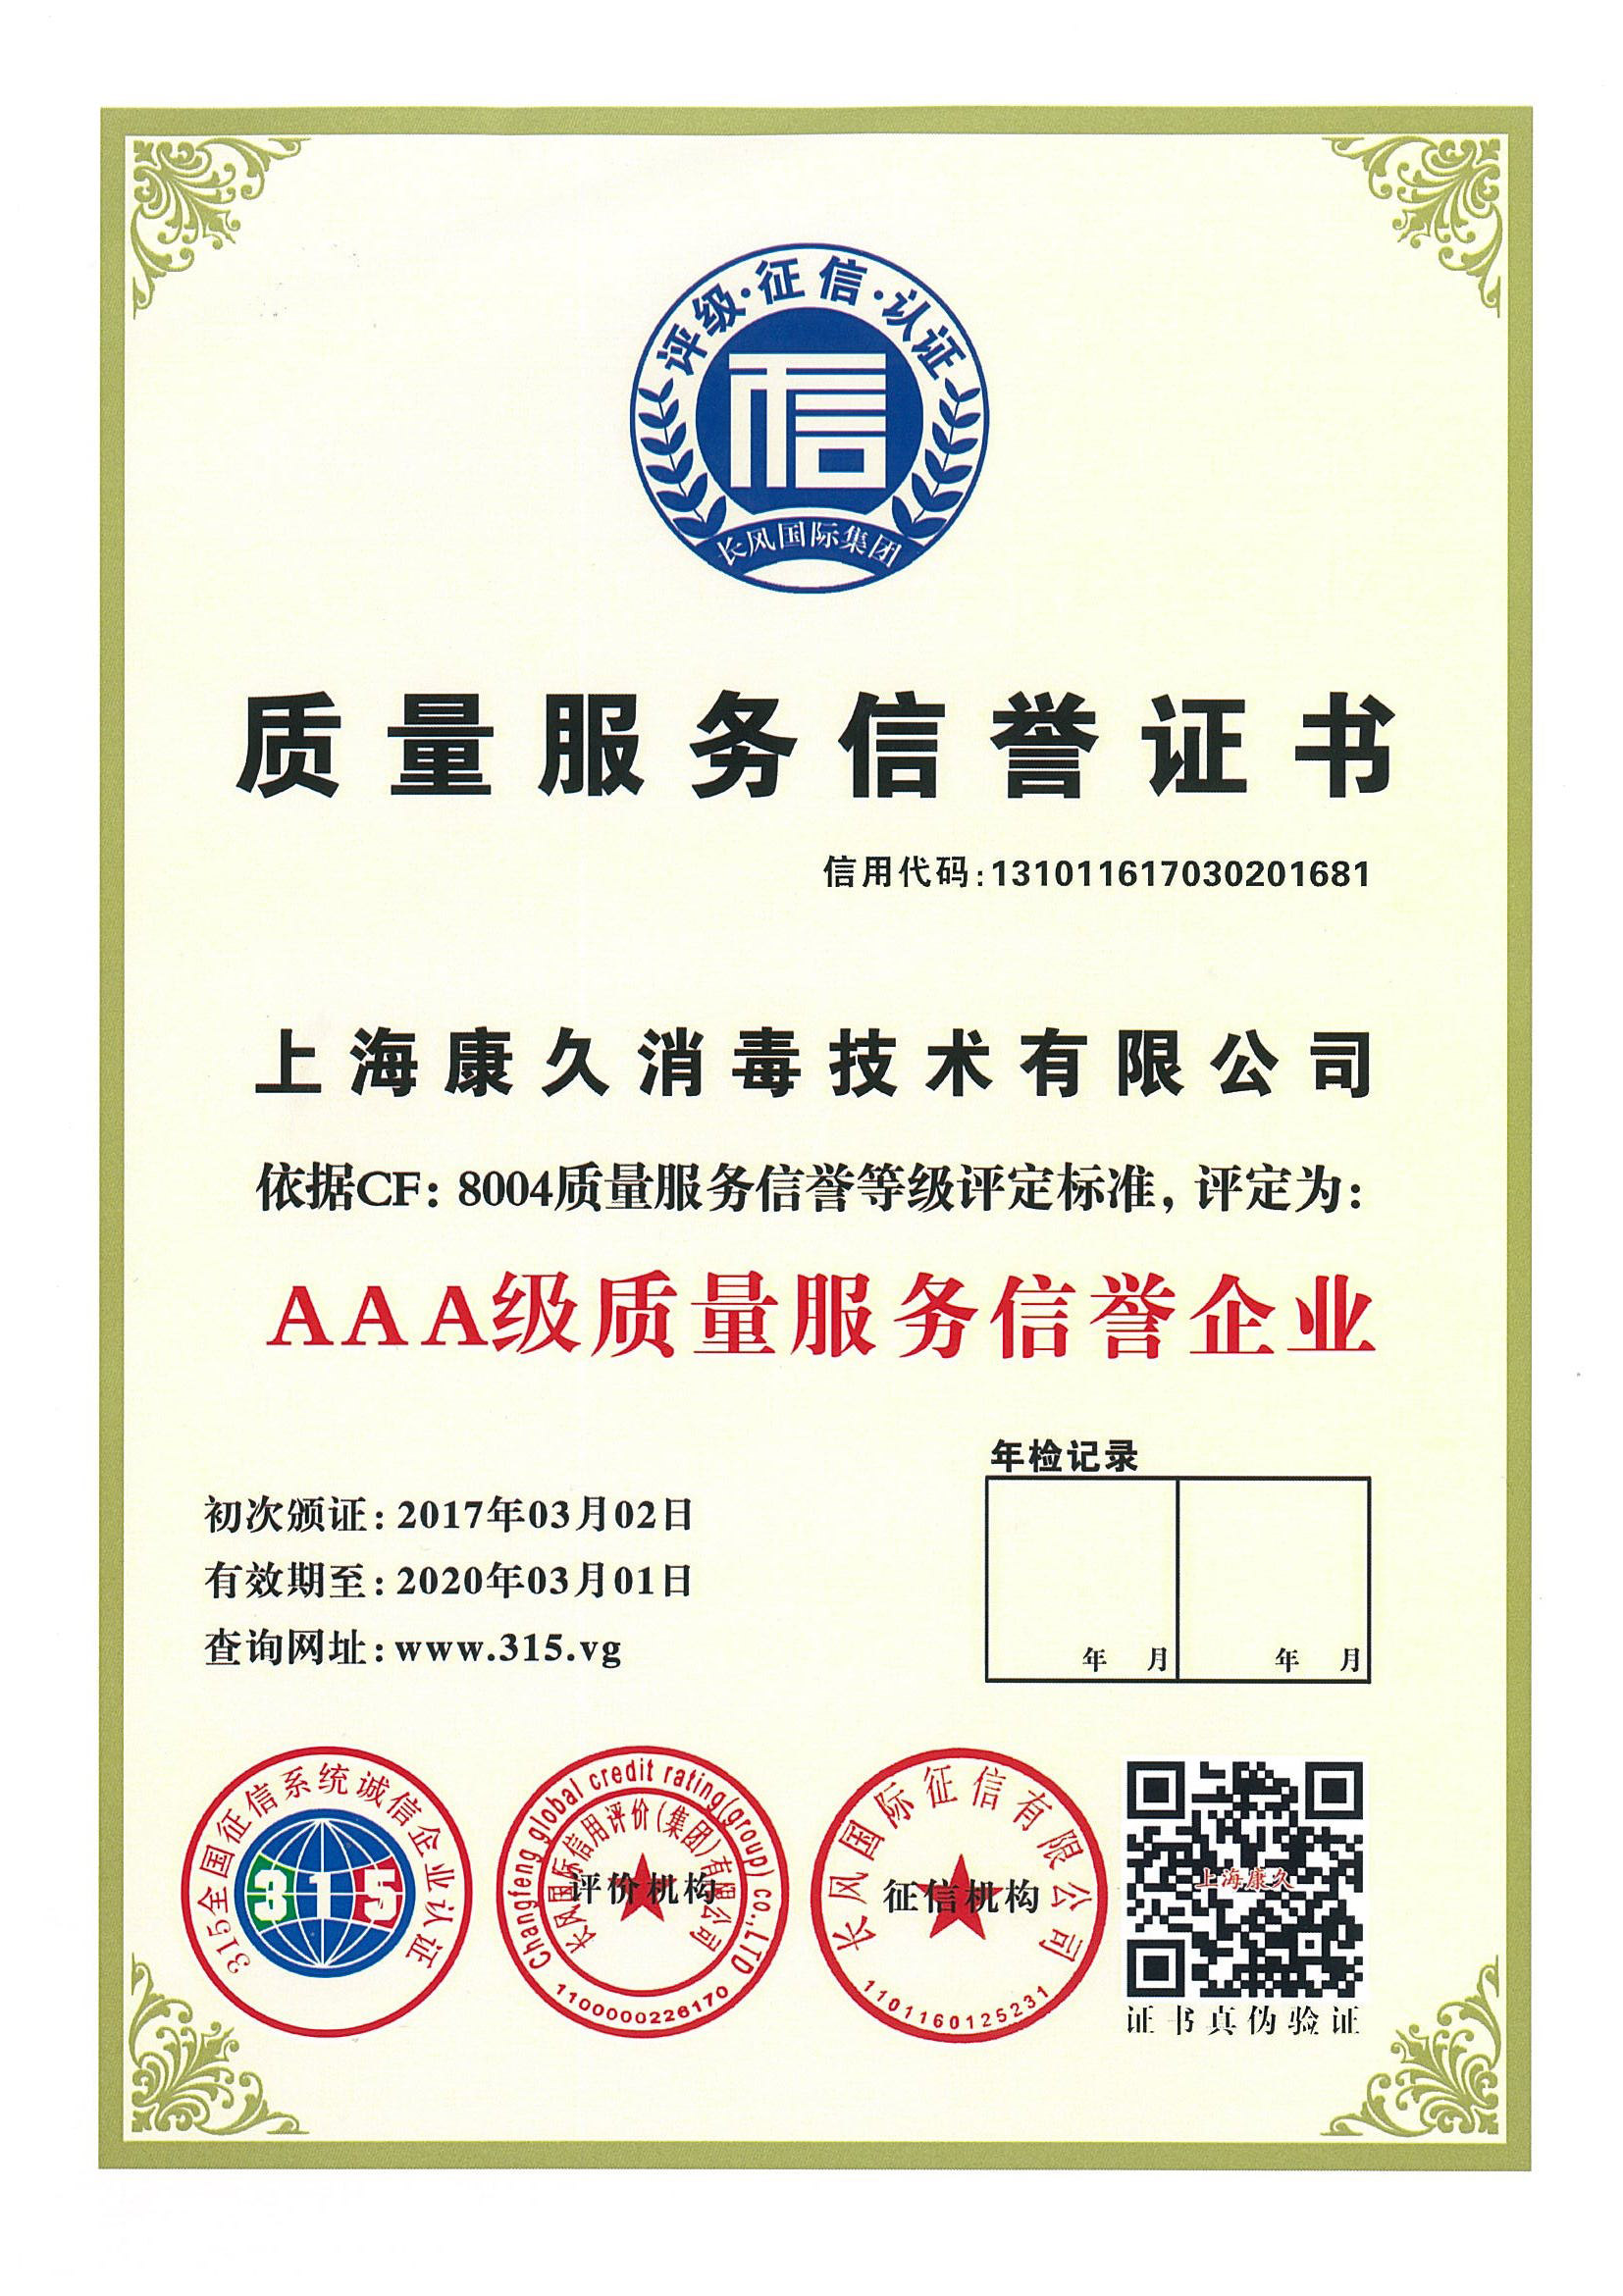 “平谷质量服务信誉证书